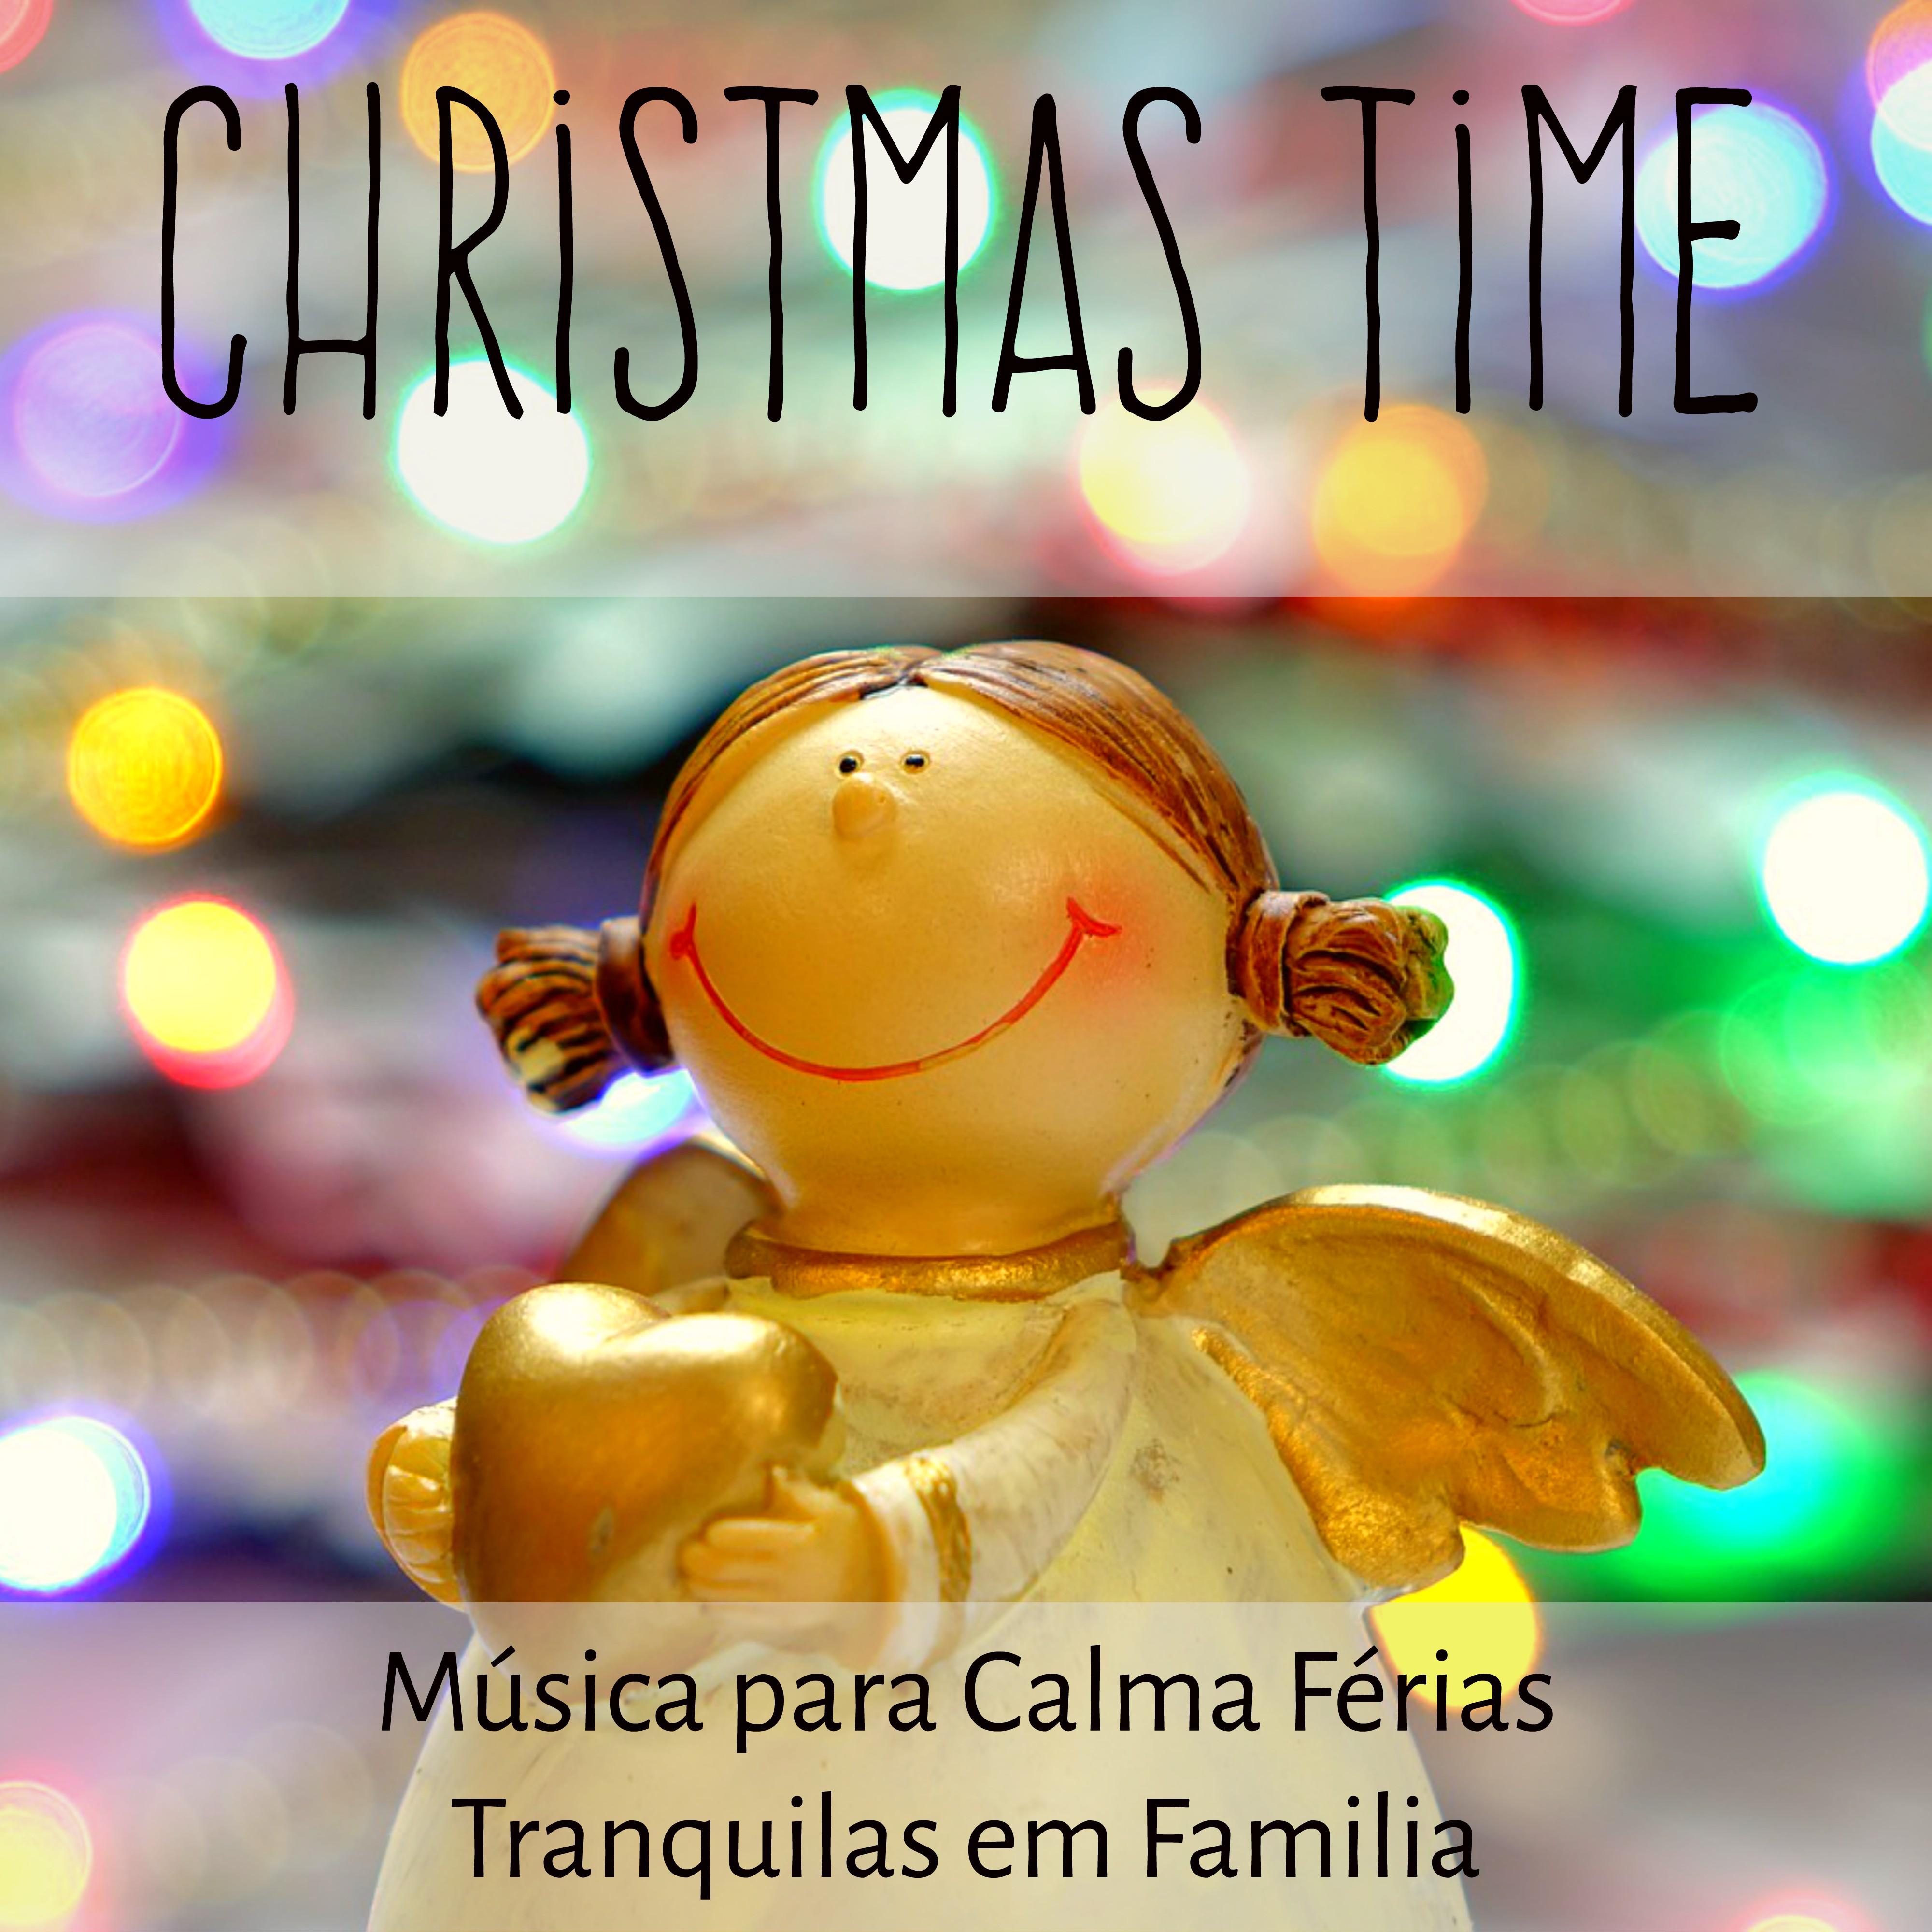 Christmas Time  Mu sica Instrumental Relaxante para Calma Fe rias Tranquilas em Familia com Sons Naturais New Age